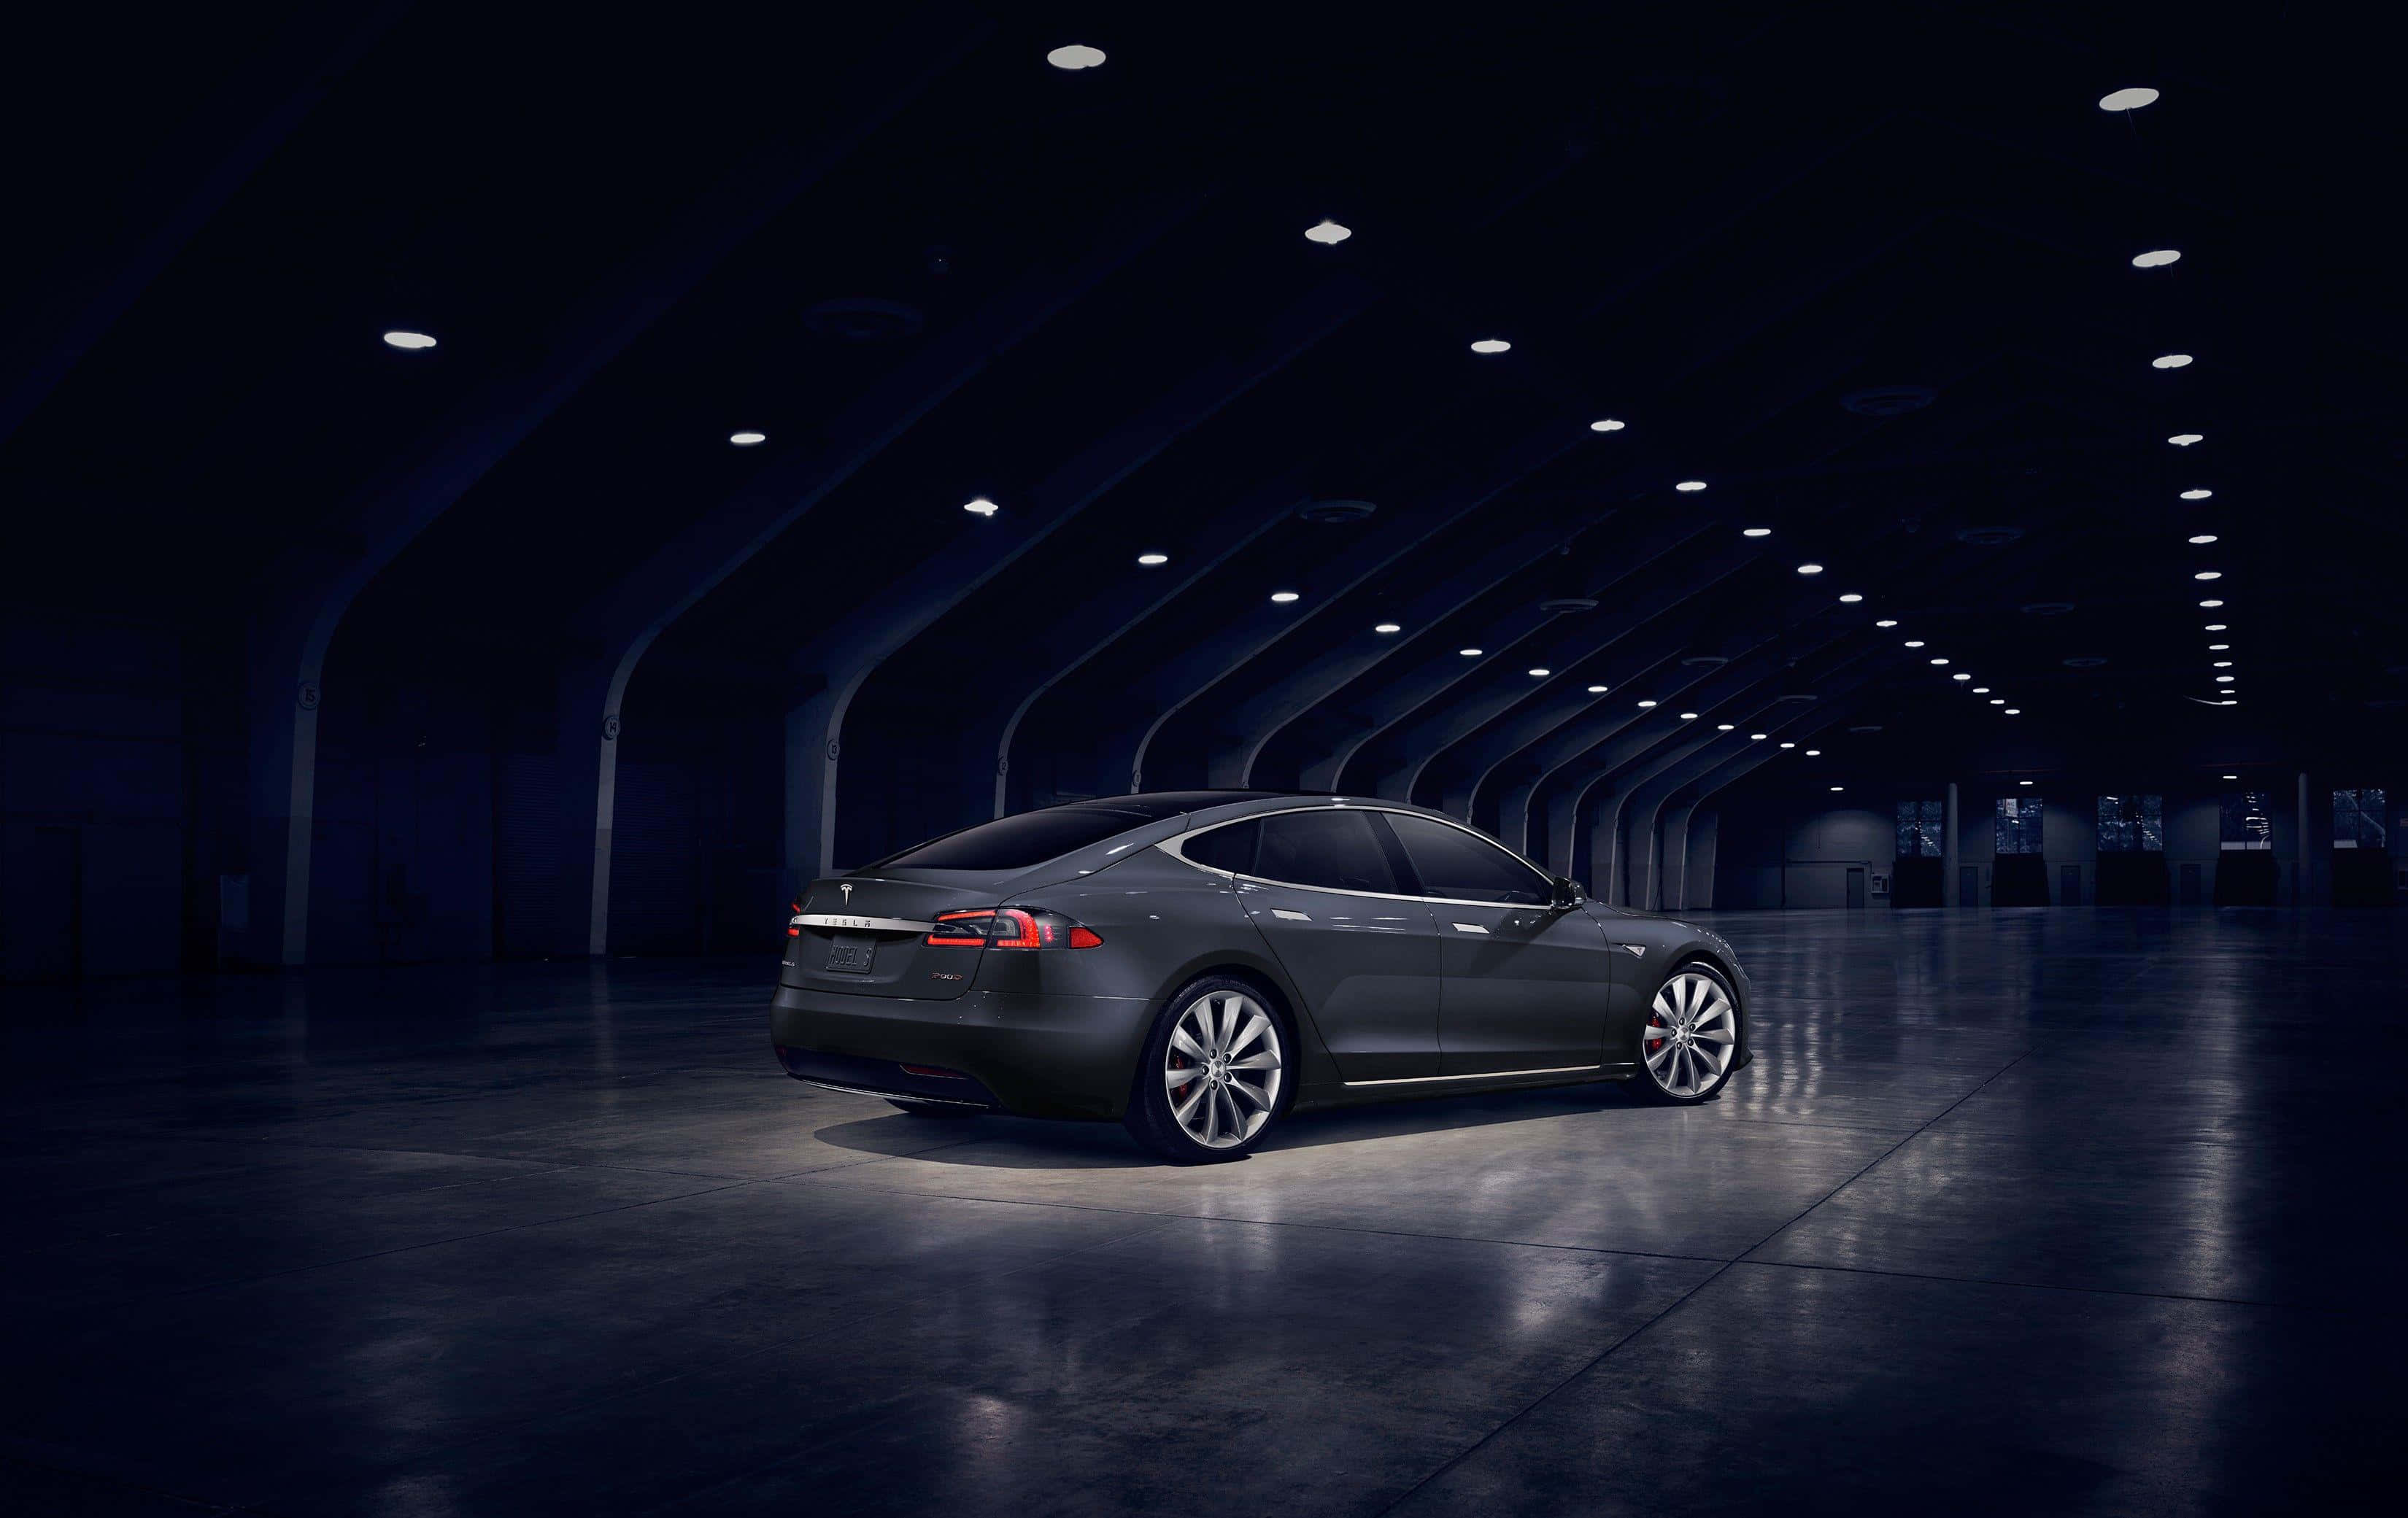 Tesla Model S In A Dark Warehouse